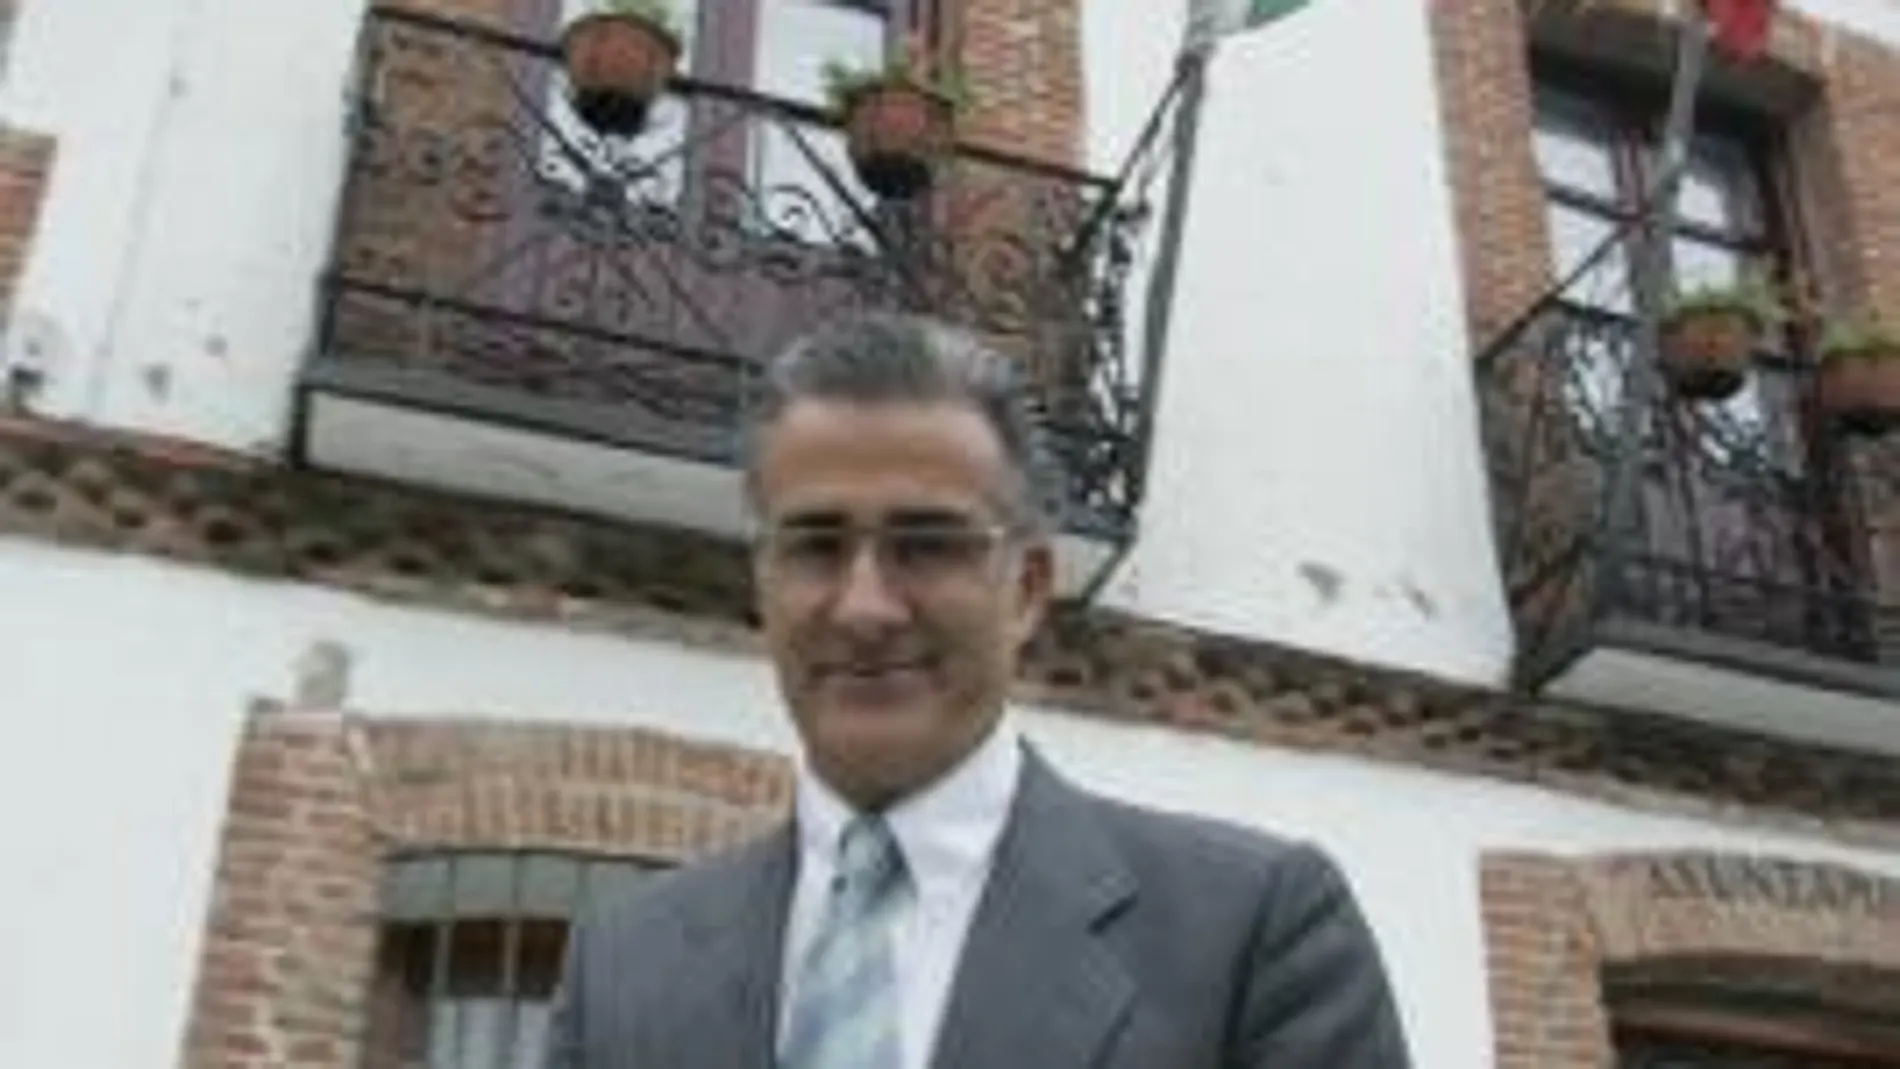 Los tránsfugas consiguen destituir al alcalde de San Agustín de Guadalix